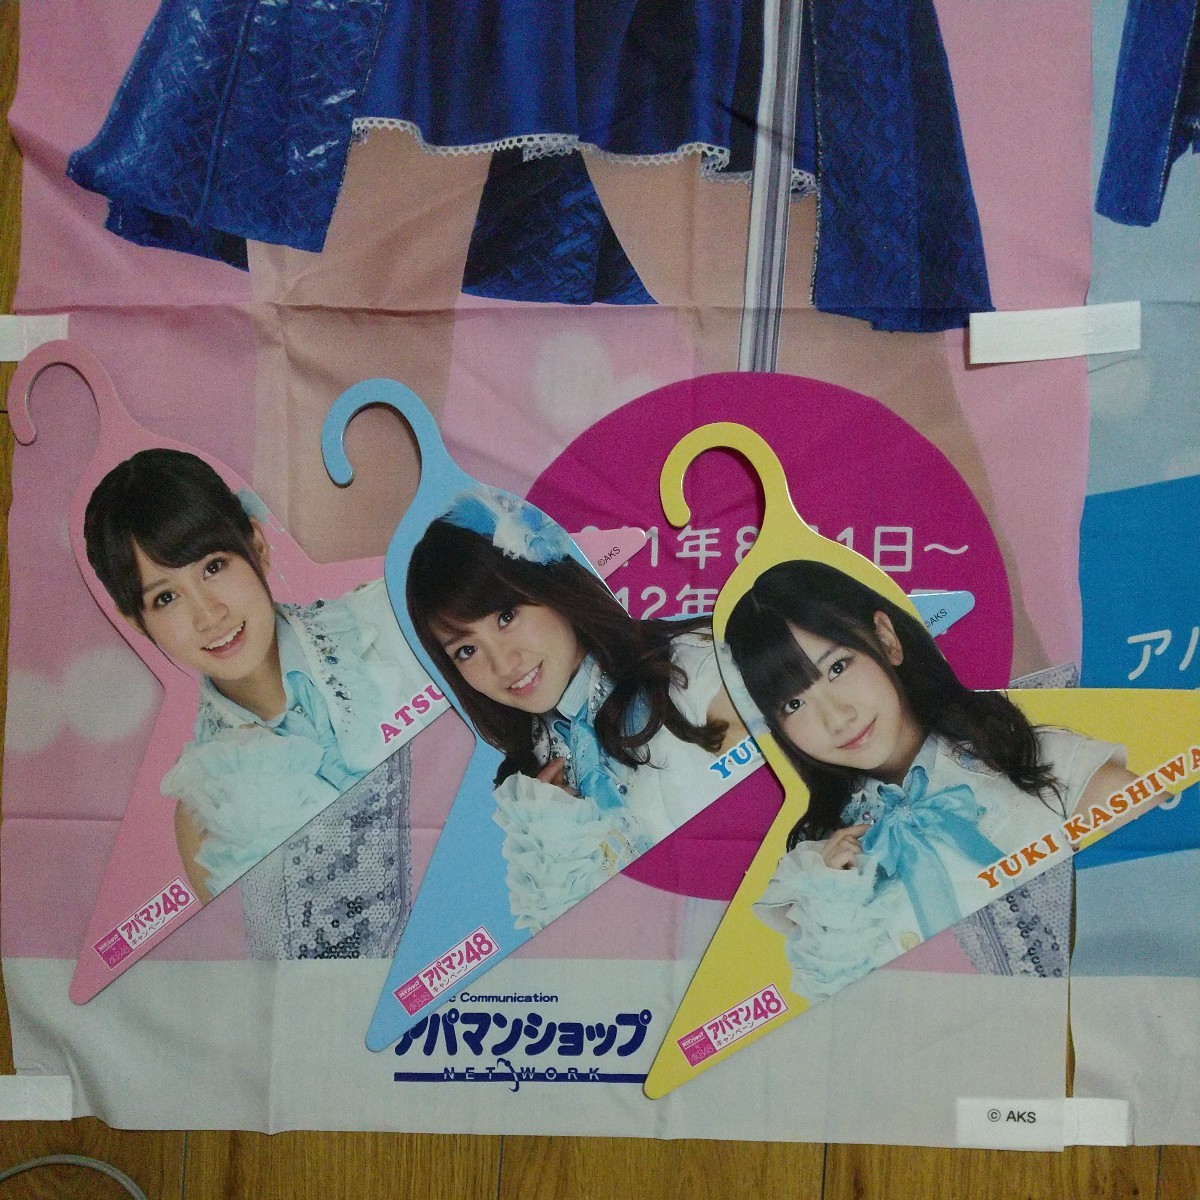 アパマンショップ AKB48 アパマン48キャンペーン のぼり2種 ランチョンマット2種 デジタオル マット ハンガー3種 スリッパ クッション他の画像2